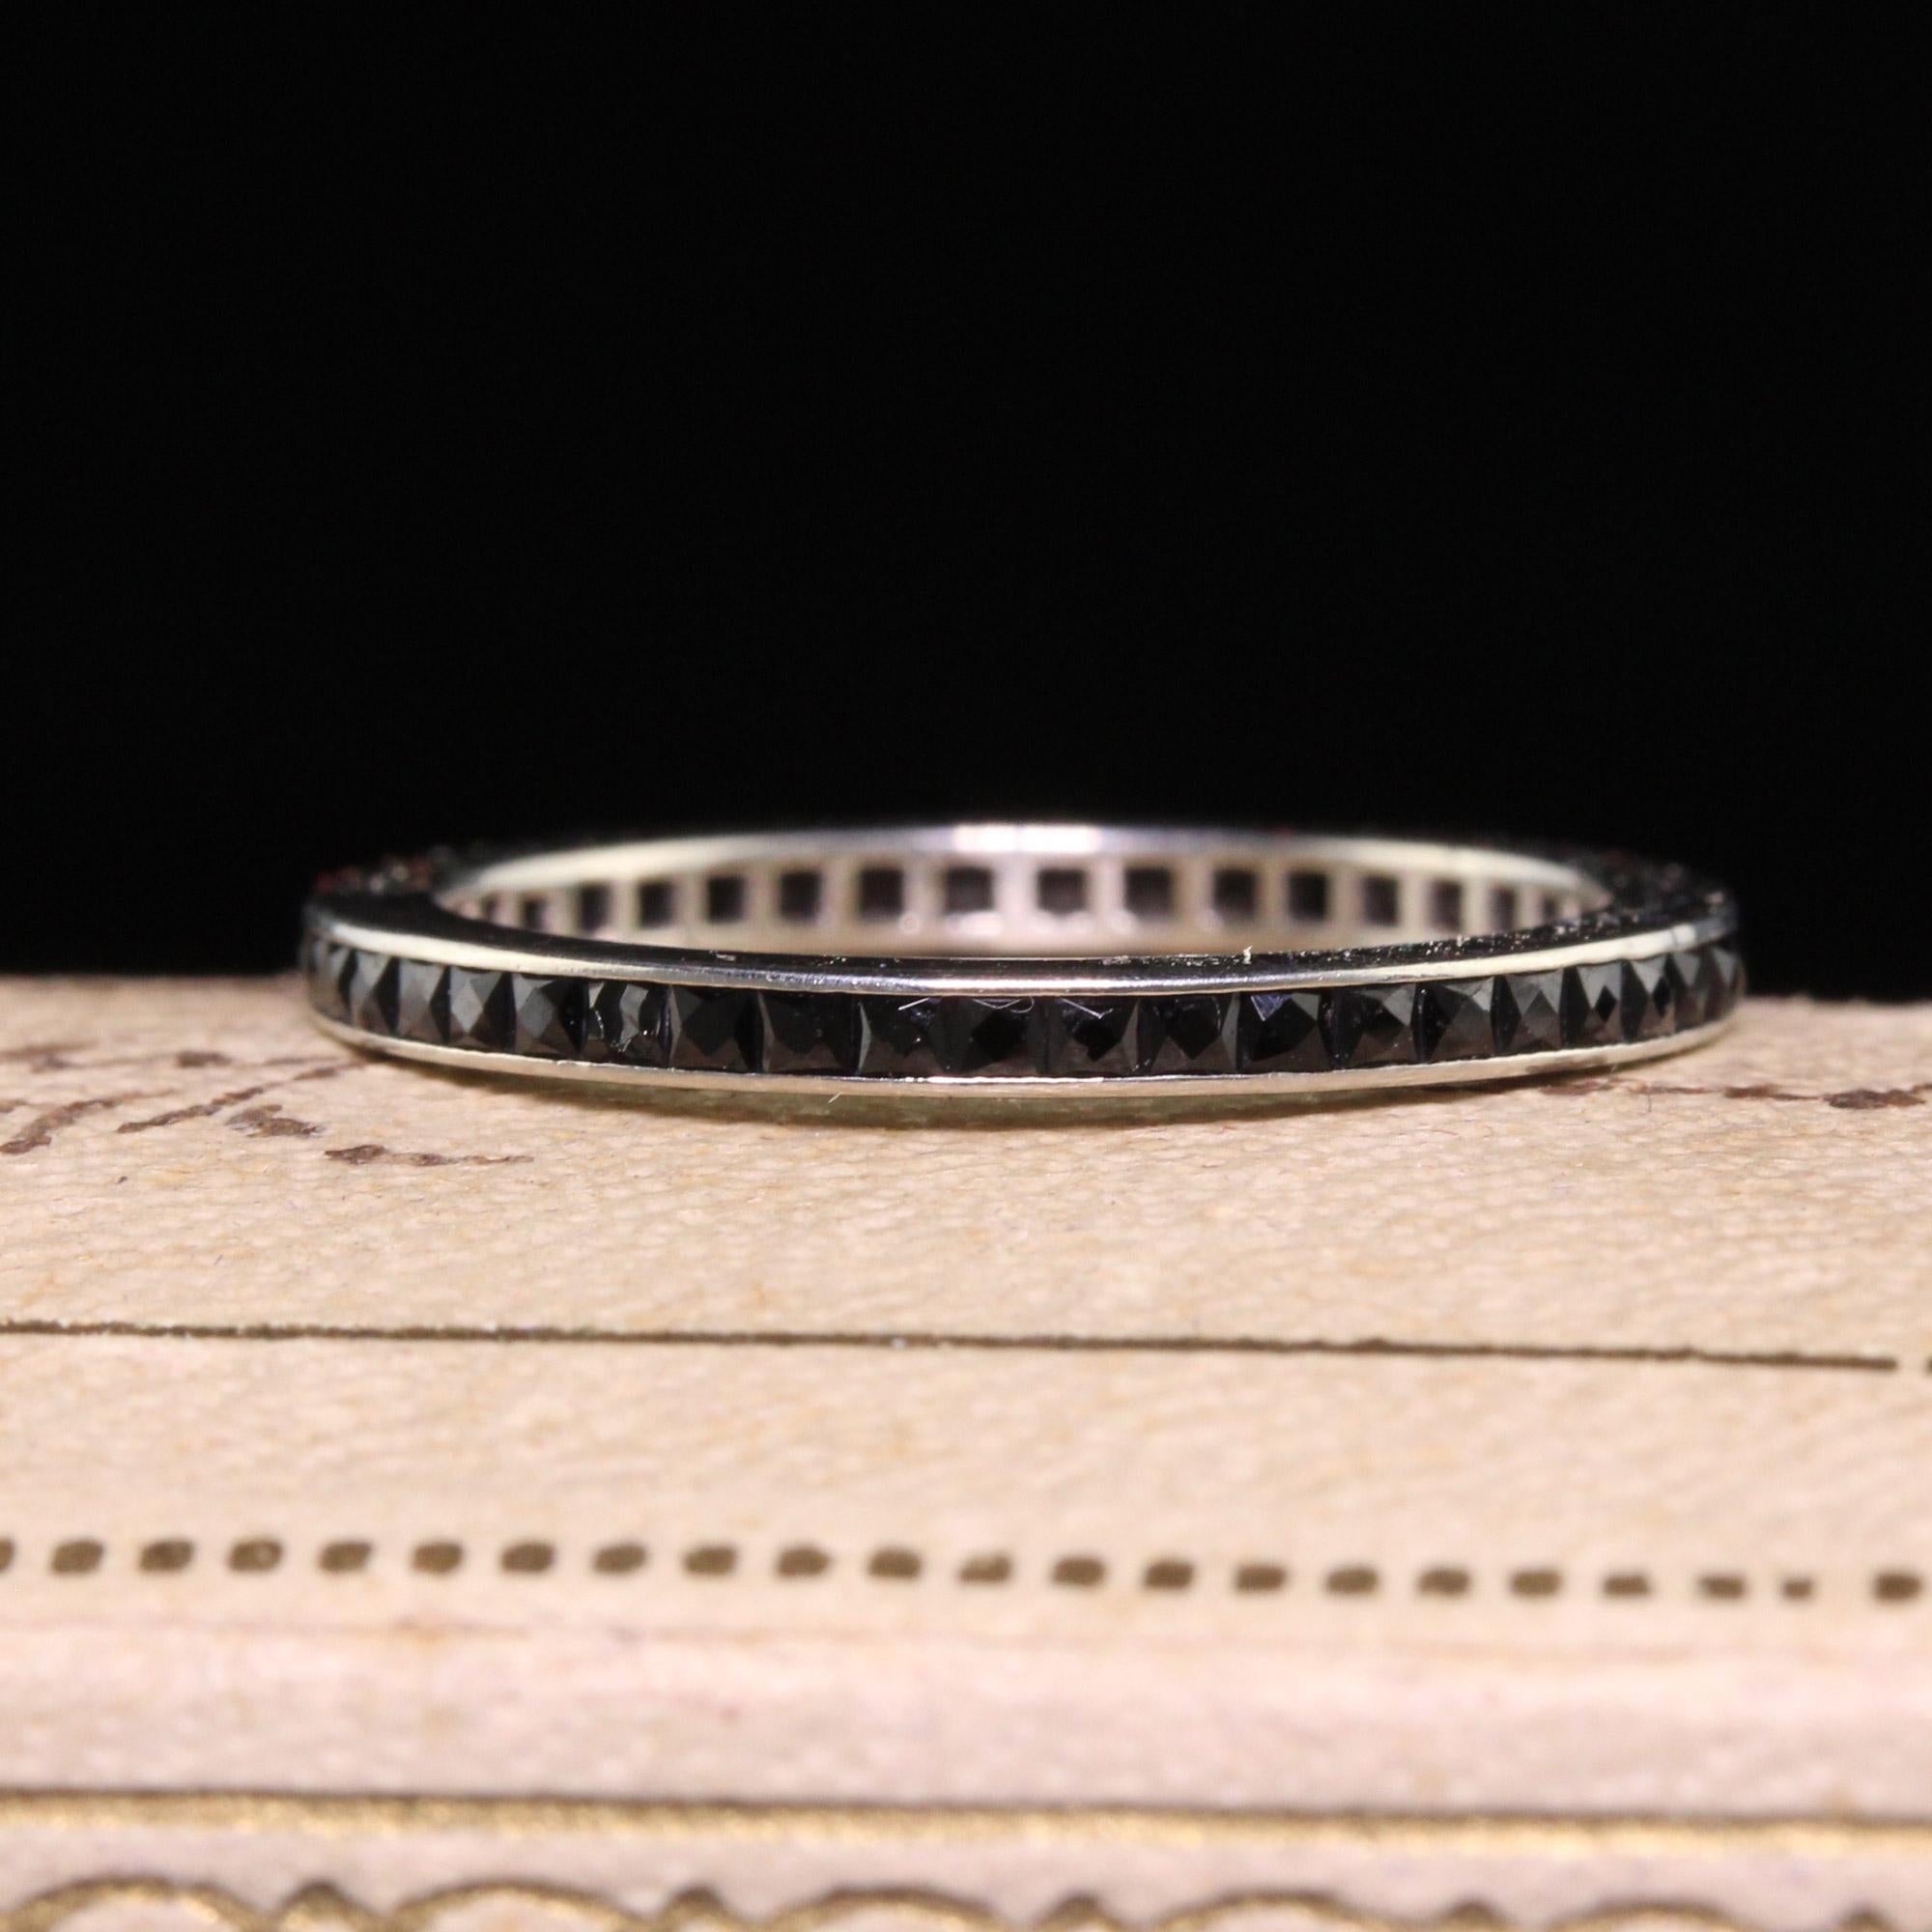 Magnifique bracelet d'éternité en or blanc 14 carats à l'onyx taillé à la française - Taille 5 1/2. Ce magnifique bracelet d'éternité est fabriqué en or blanc 14k. La bague a des onyx taillés en France qui font le tour de l'anneau et elle est en